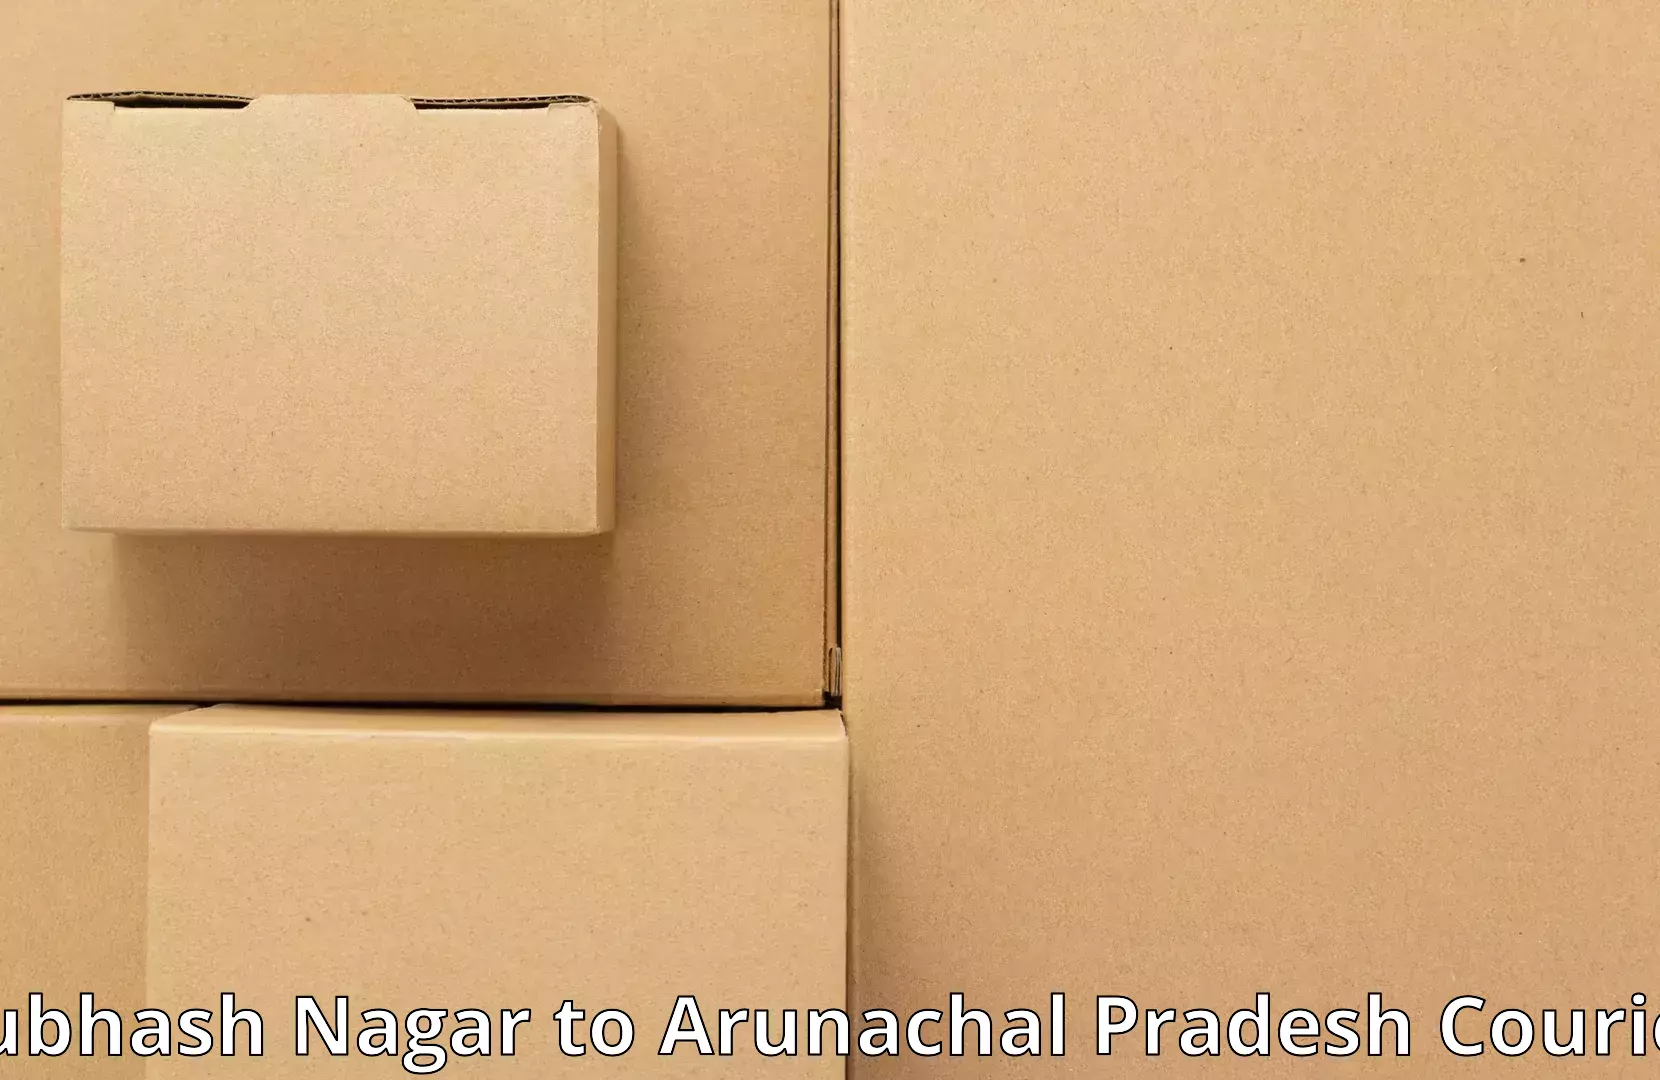 Efficient moving and packing Subhash Nagar to Kharsang